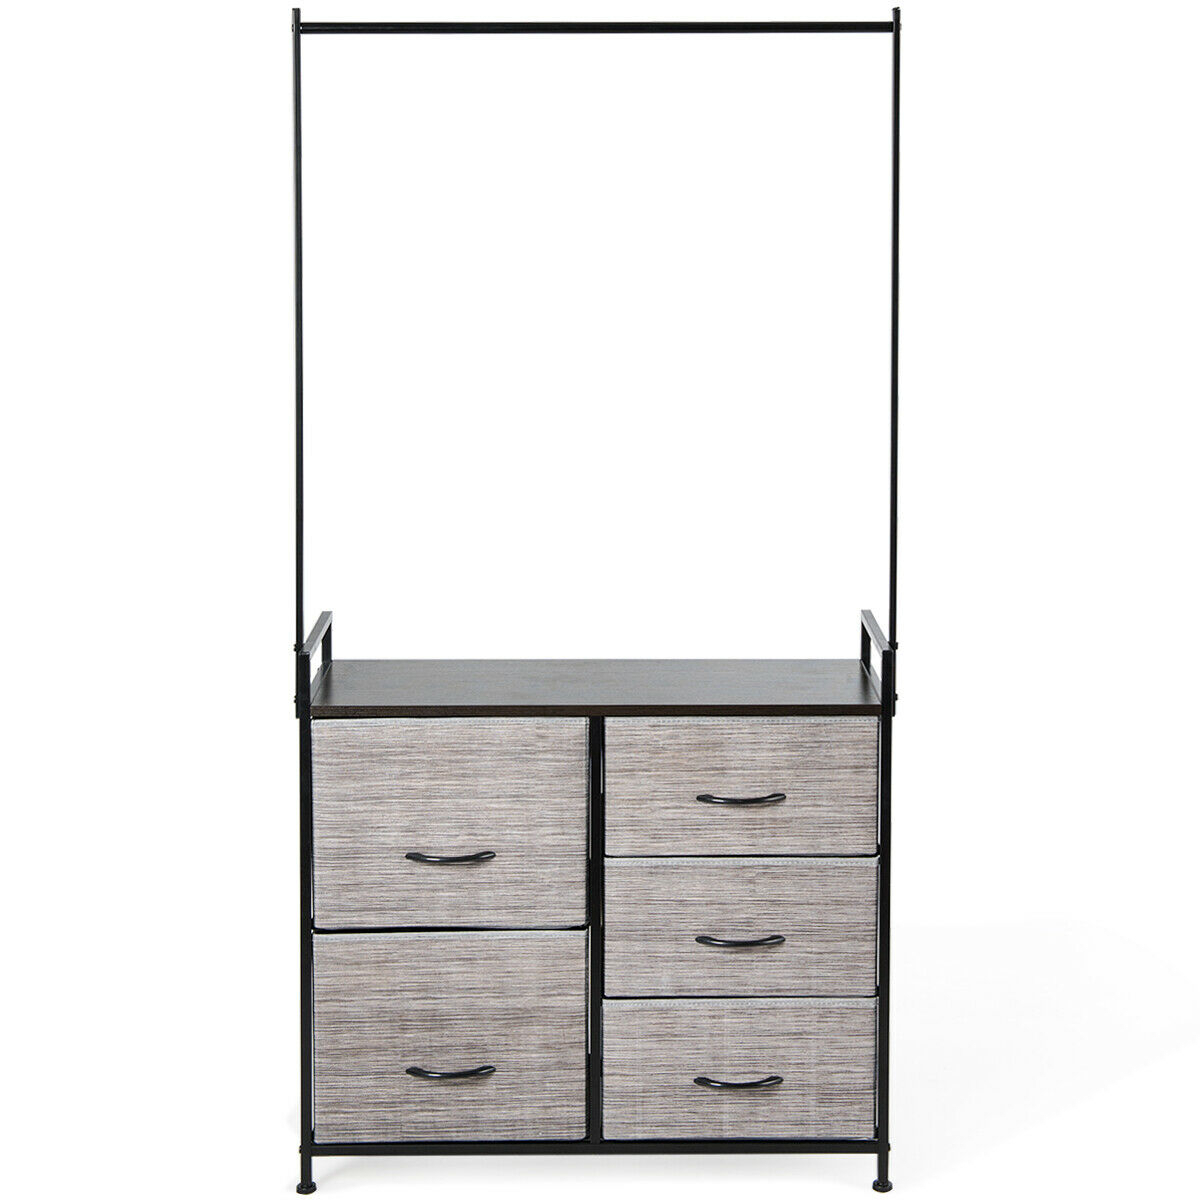 Dresser Storage Tower Closet Organizer W/ 5 Drawers Metal Frame Wooden Top